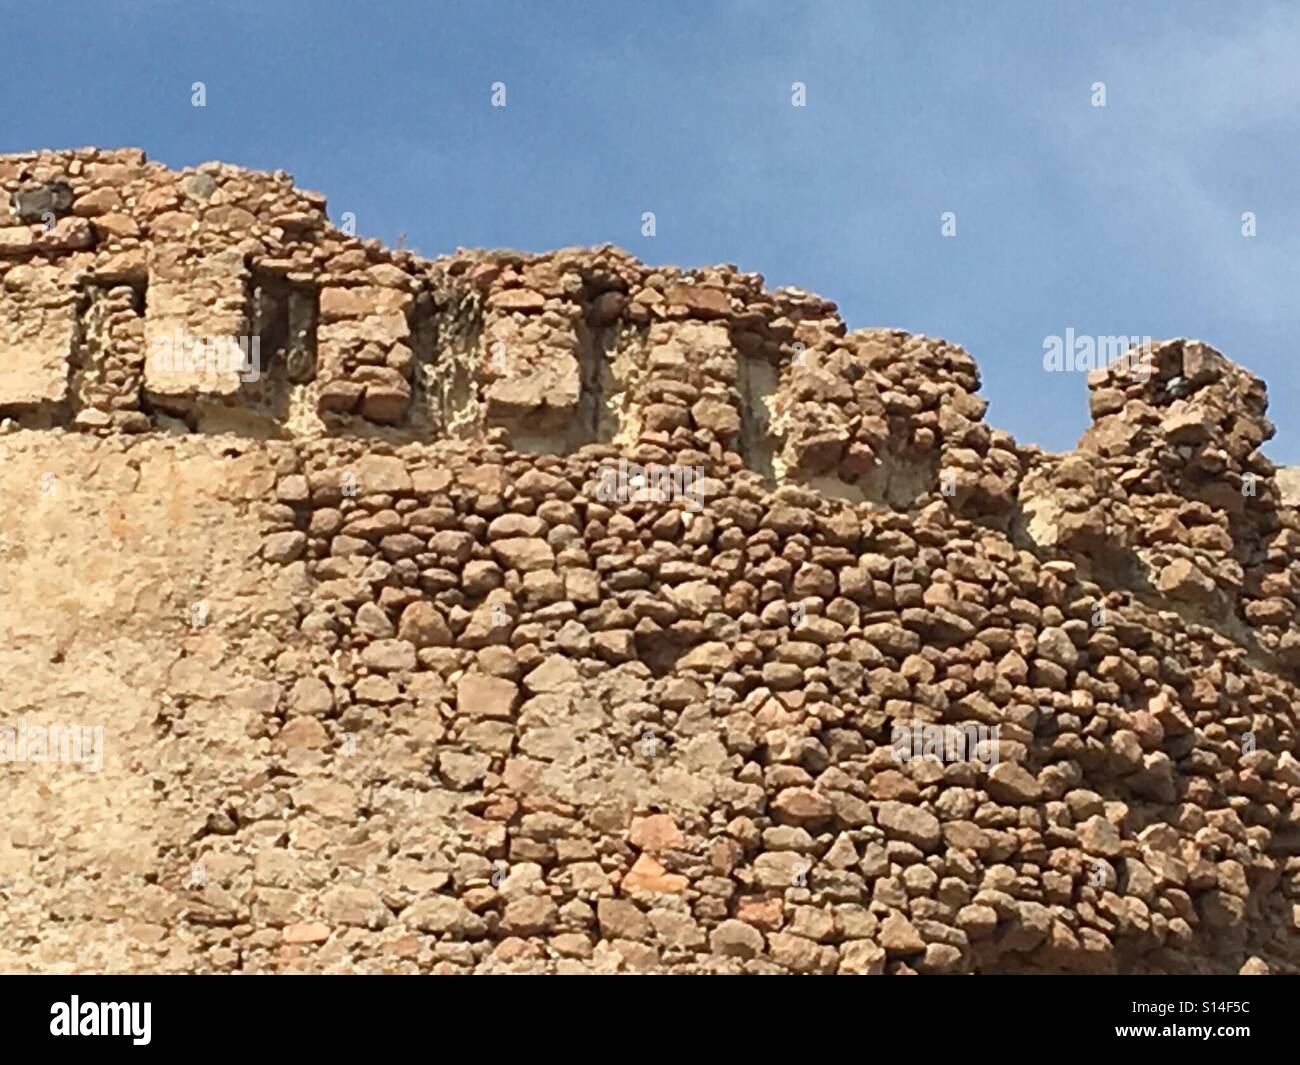 Bröckelnden Zinnen des spanischen Turm oder Torre Spagnola ein 16. Jahrhundert Festung gebaut für defensive Zwecke auf der westlichen Küste von Sardinien, Isola Rossa, September Stockfoto